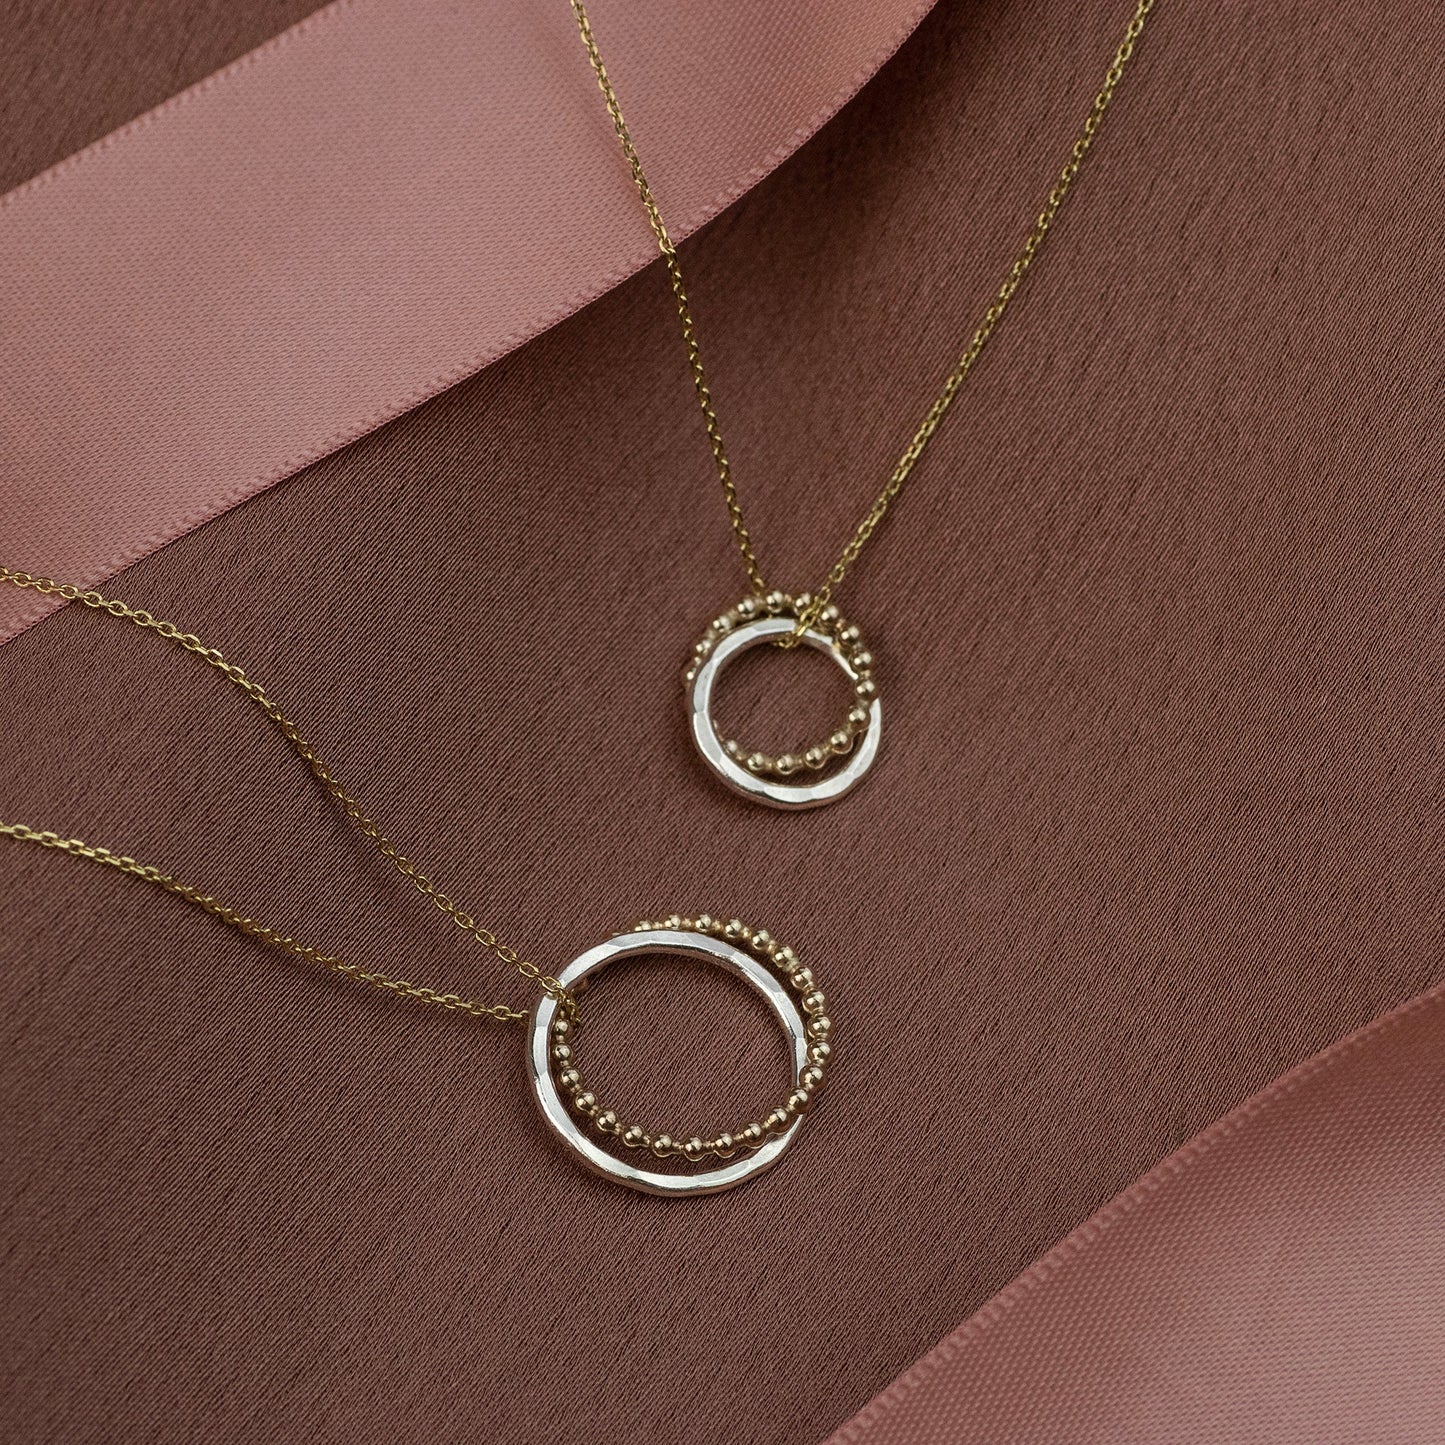 Godmother & Godmother Necklaces Set of 2 - 9kt Gold & Silver